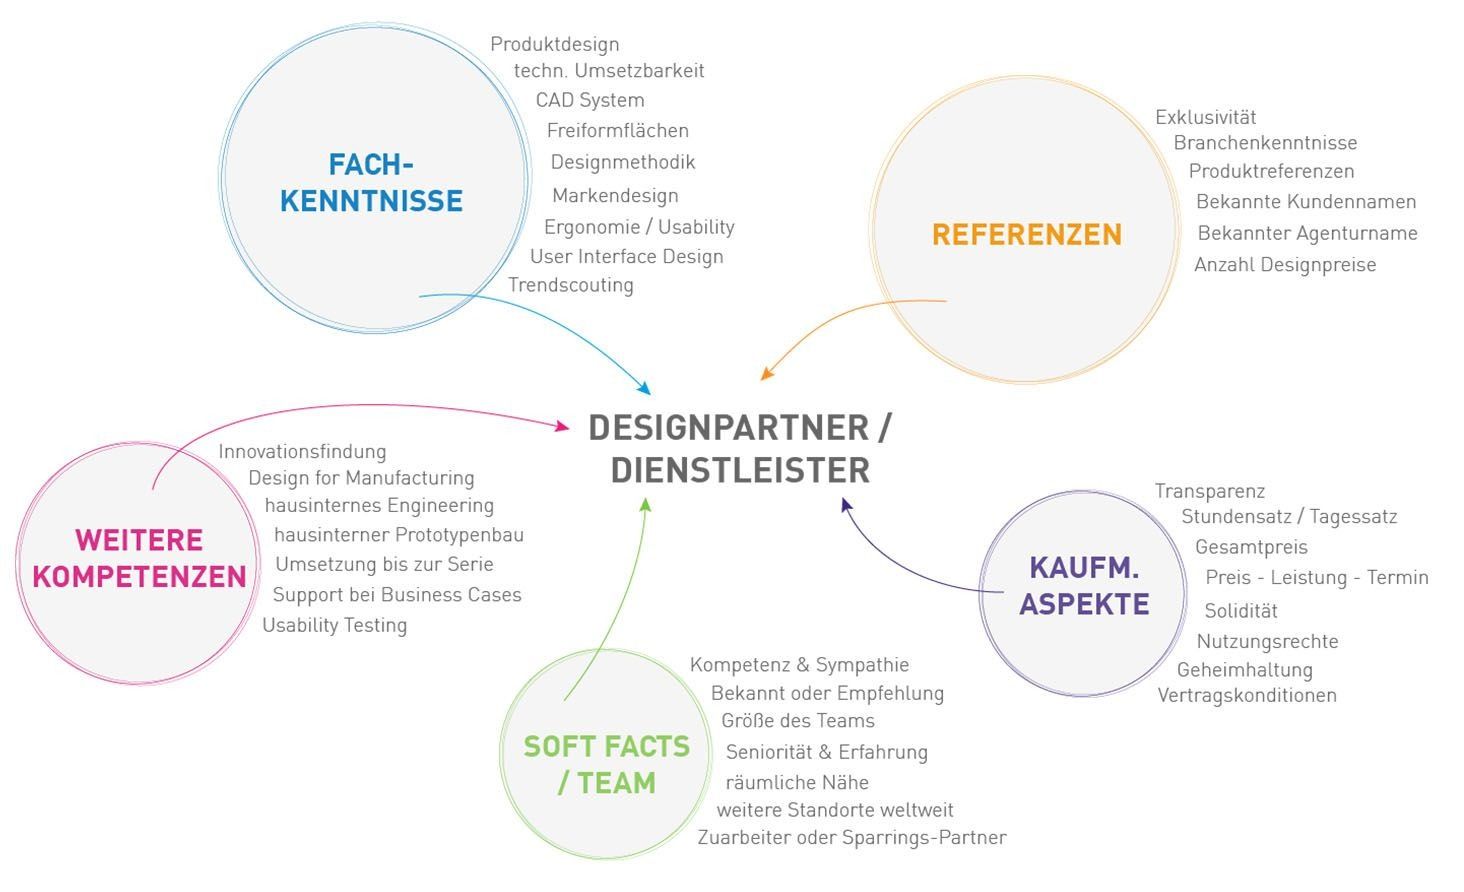 Grafik zu Designpartner und Dienstleister